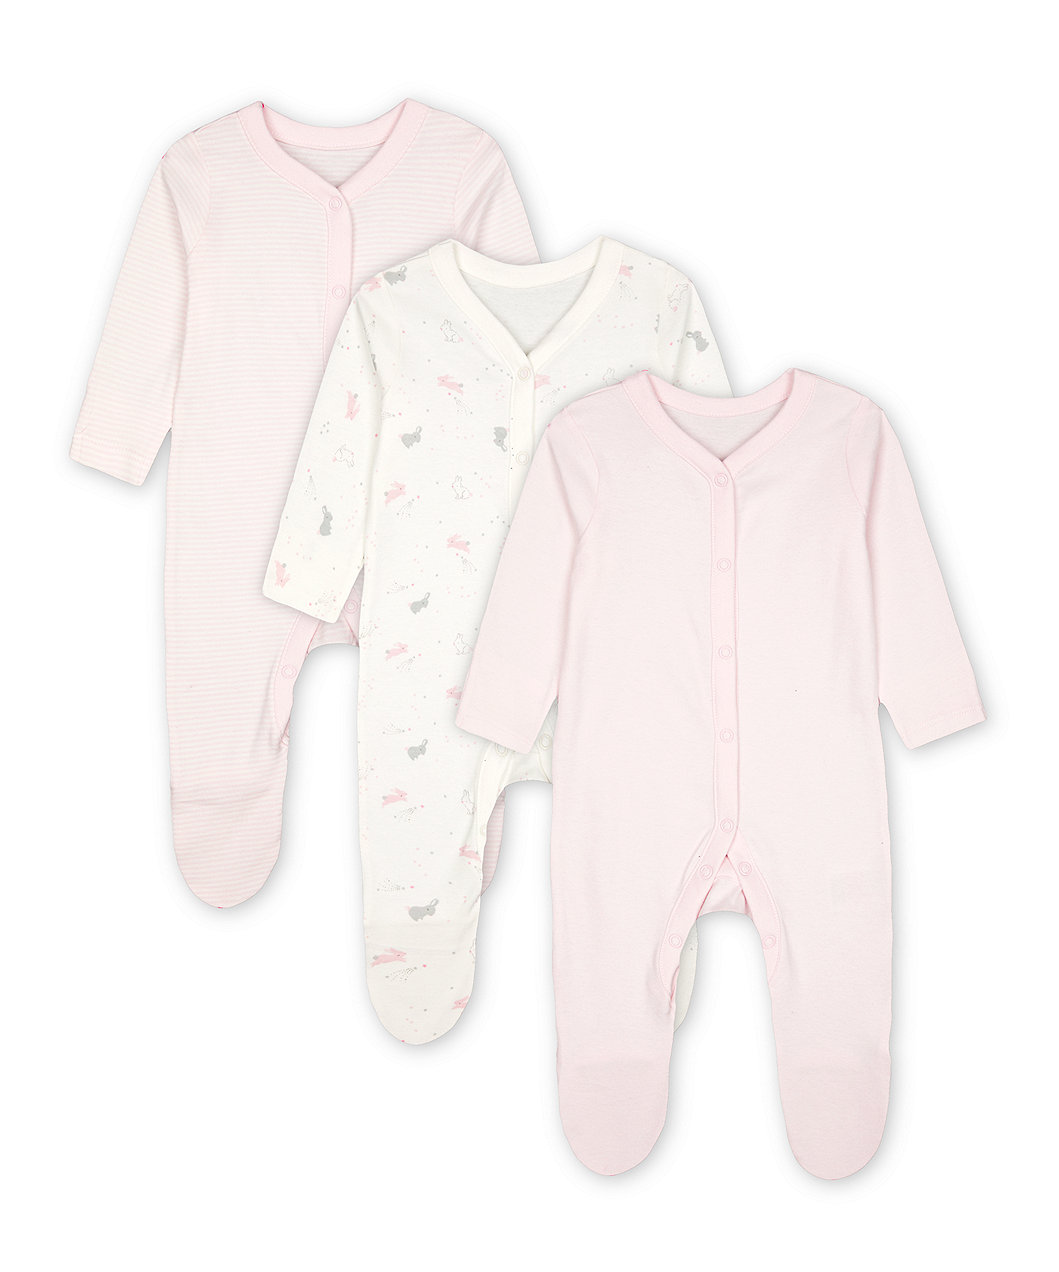 mothercare baby girl sleepsuits